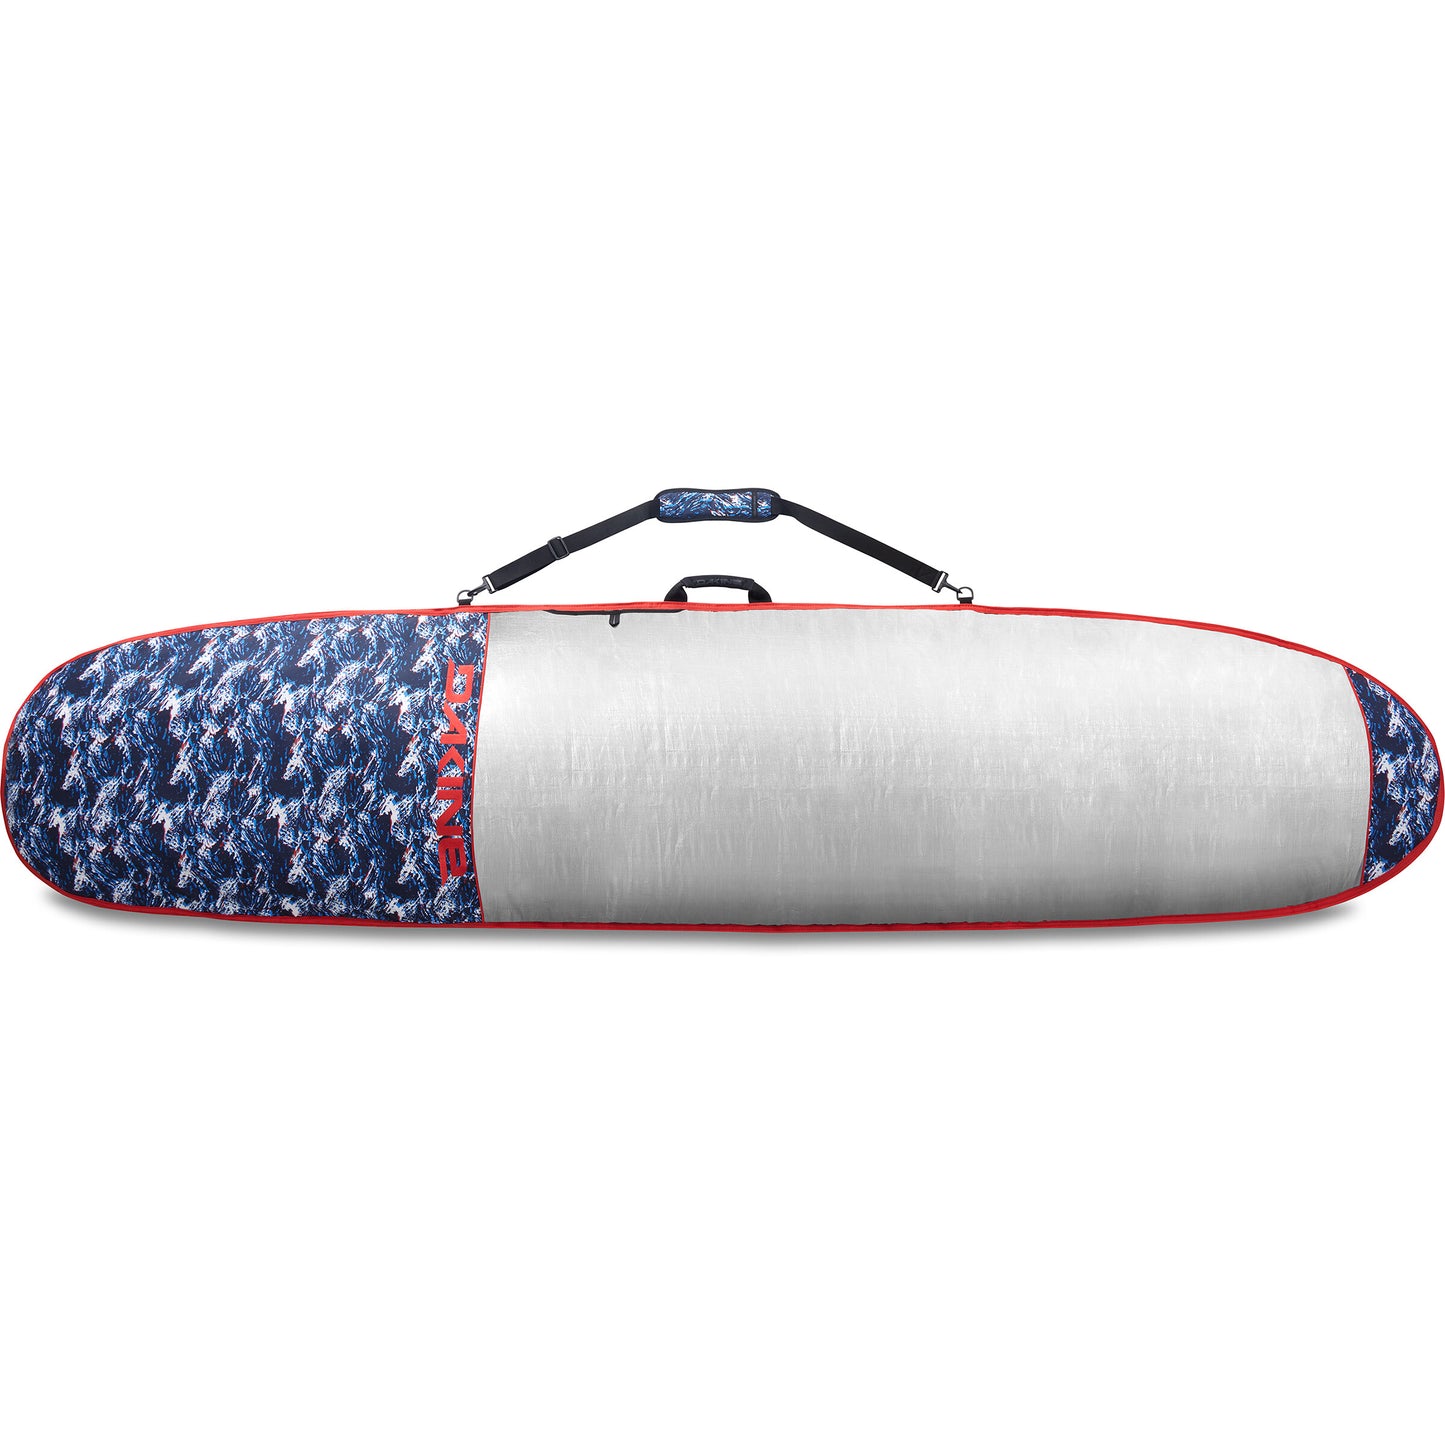 DAKINE DAYLIGHT SURFBOARD BAG NOSERIDER